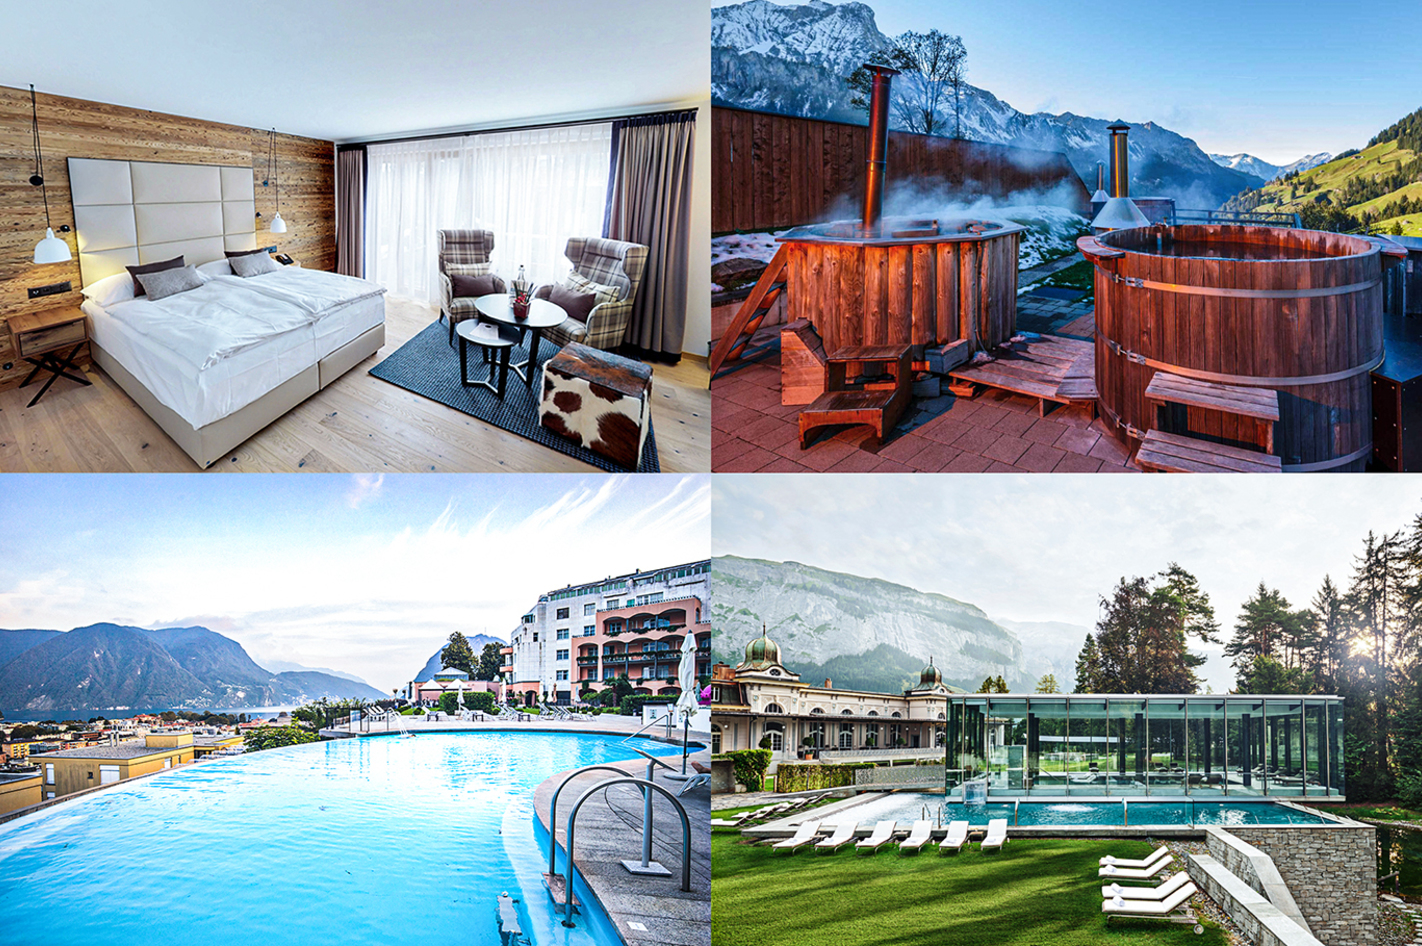 Hotelcard – Hotels mit 30-50 % Rabatt – Die Schweiz zum Spartarif entdecken!